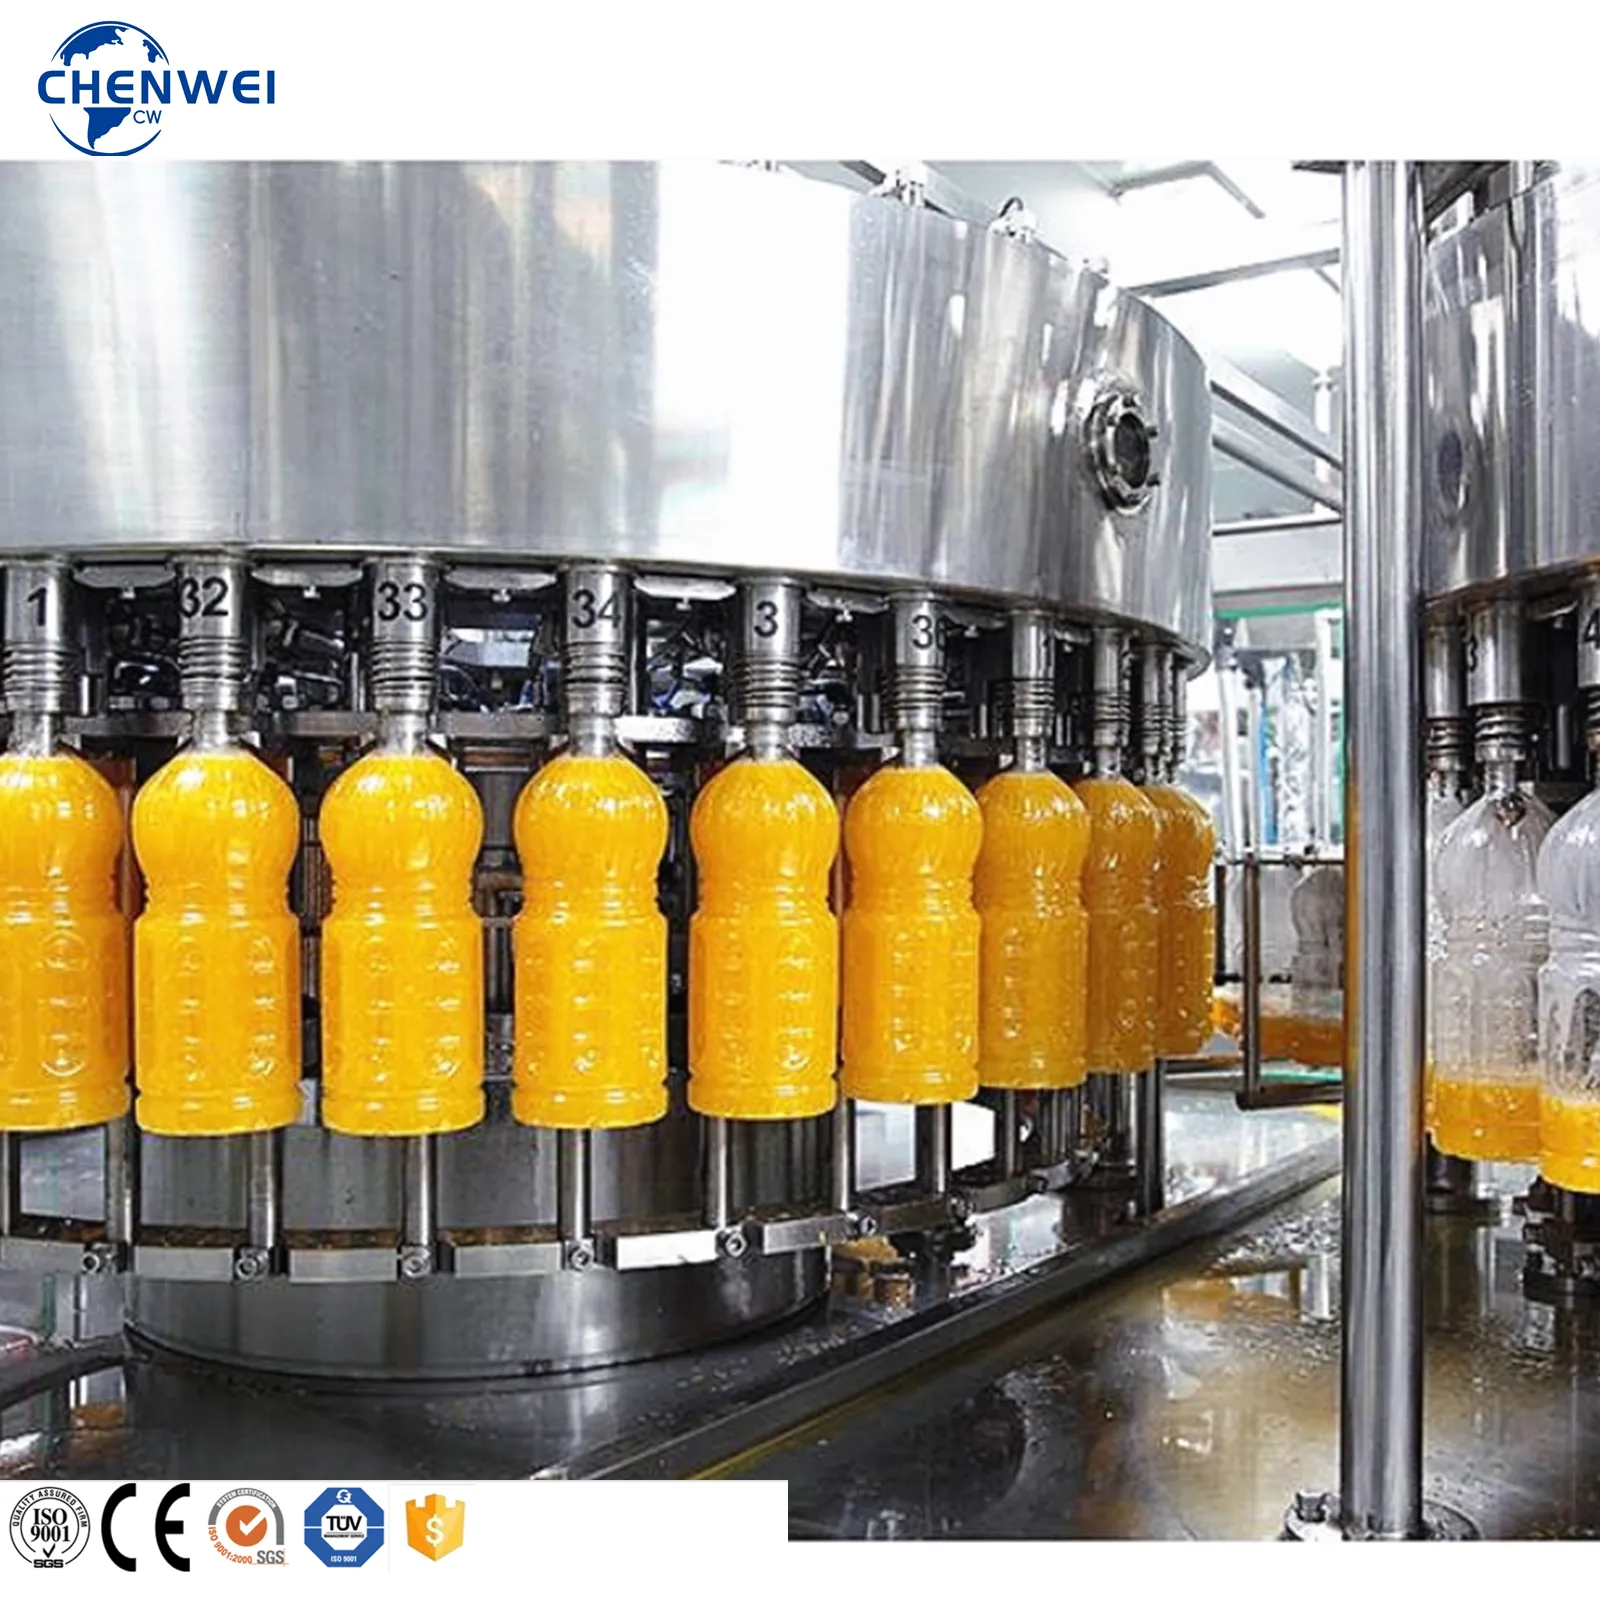 12000bph suyu üretim hattı içecek işleme hattı küçük ölçekli meyve suyu yapma makinesi